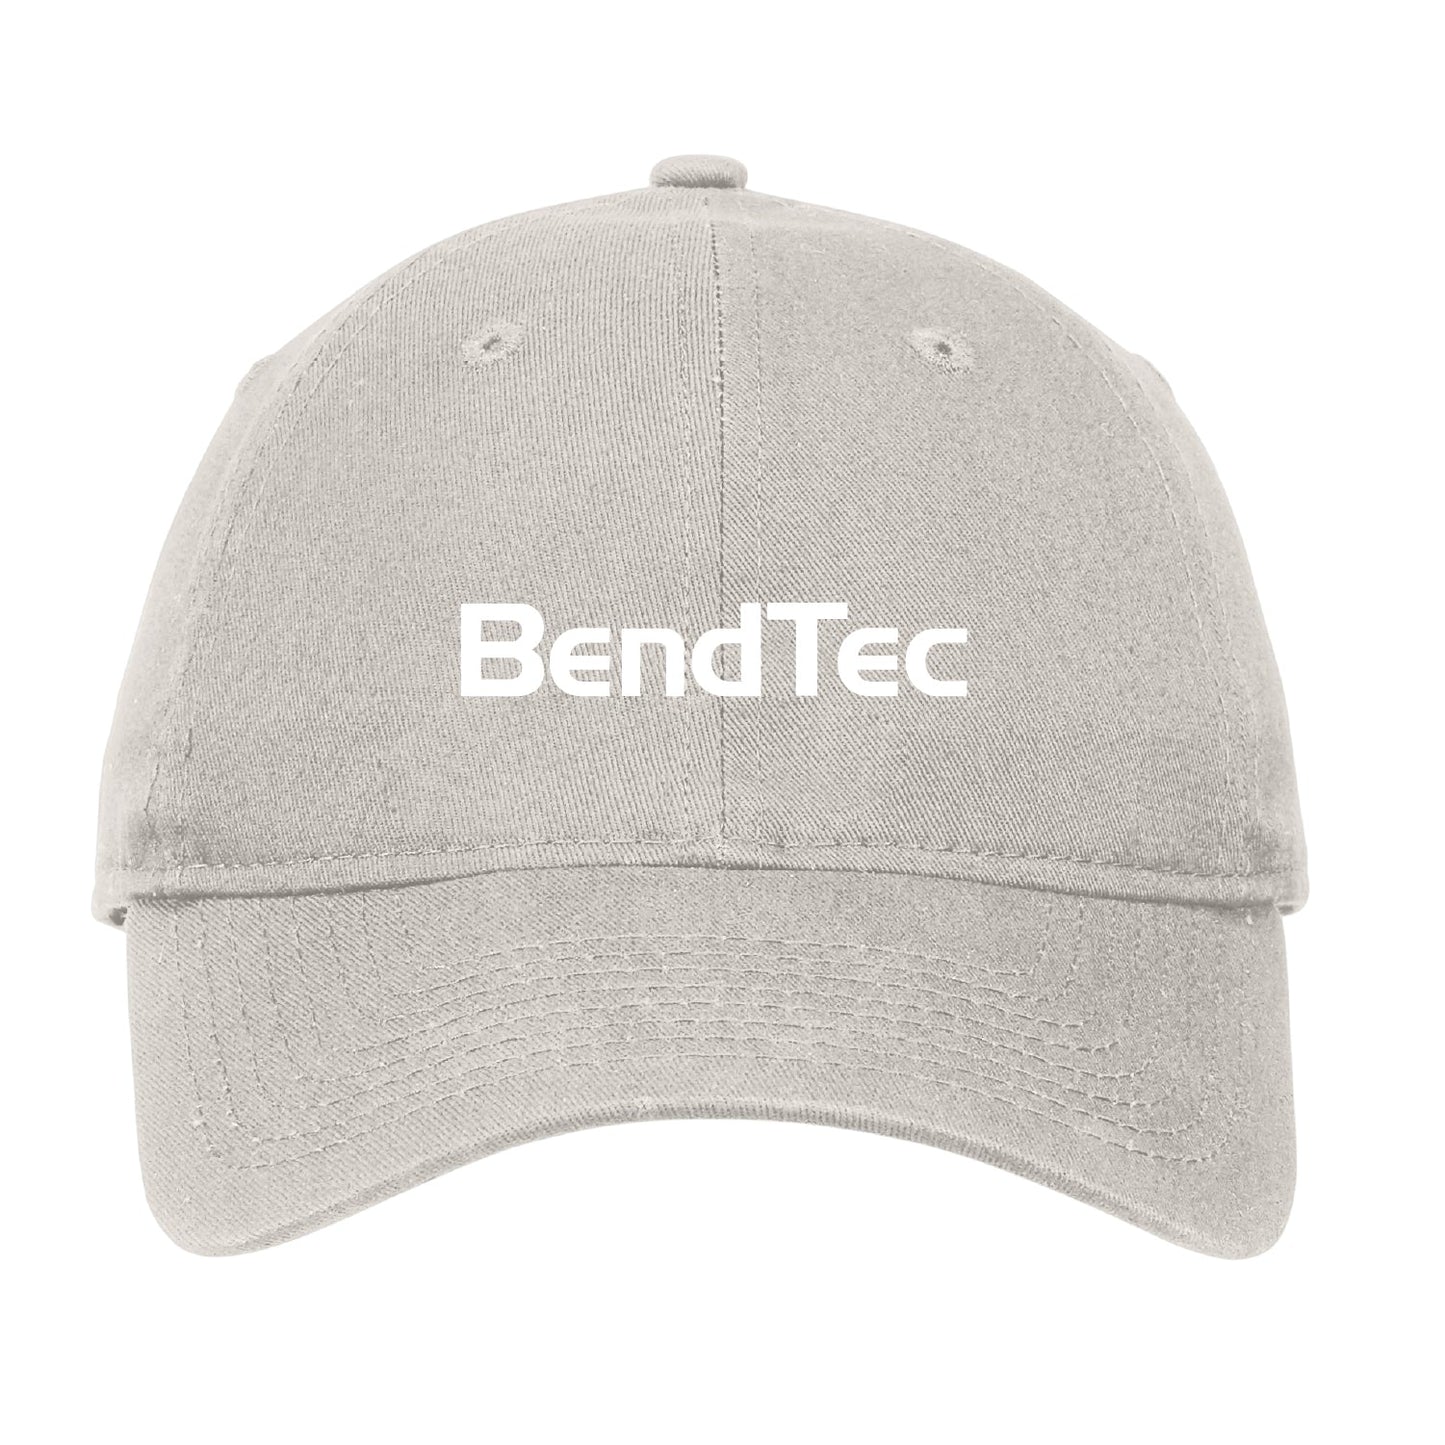 Bendtec Unstructured Adjustable Cap - DSP On Demand